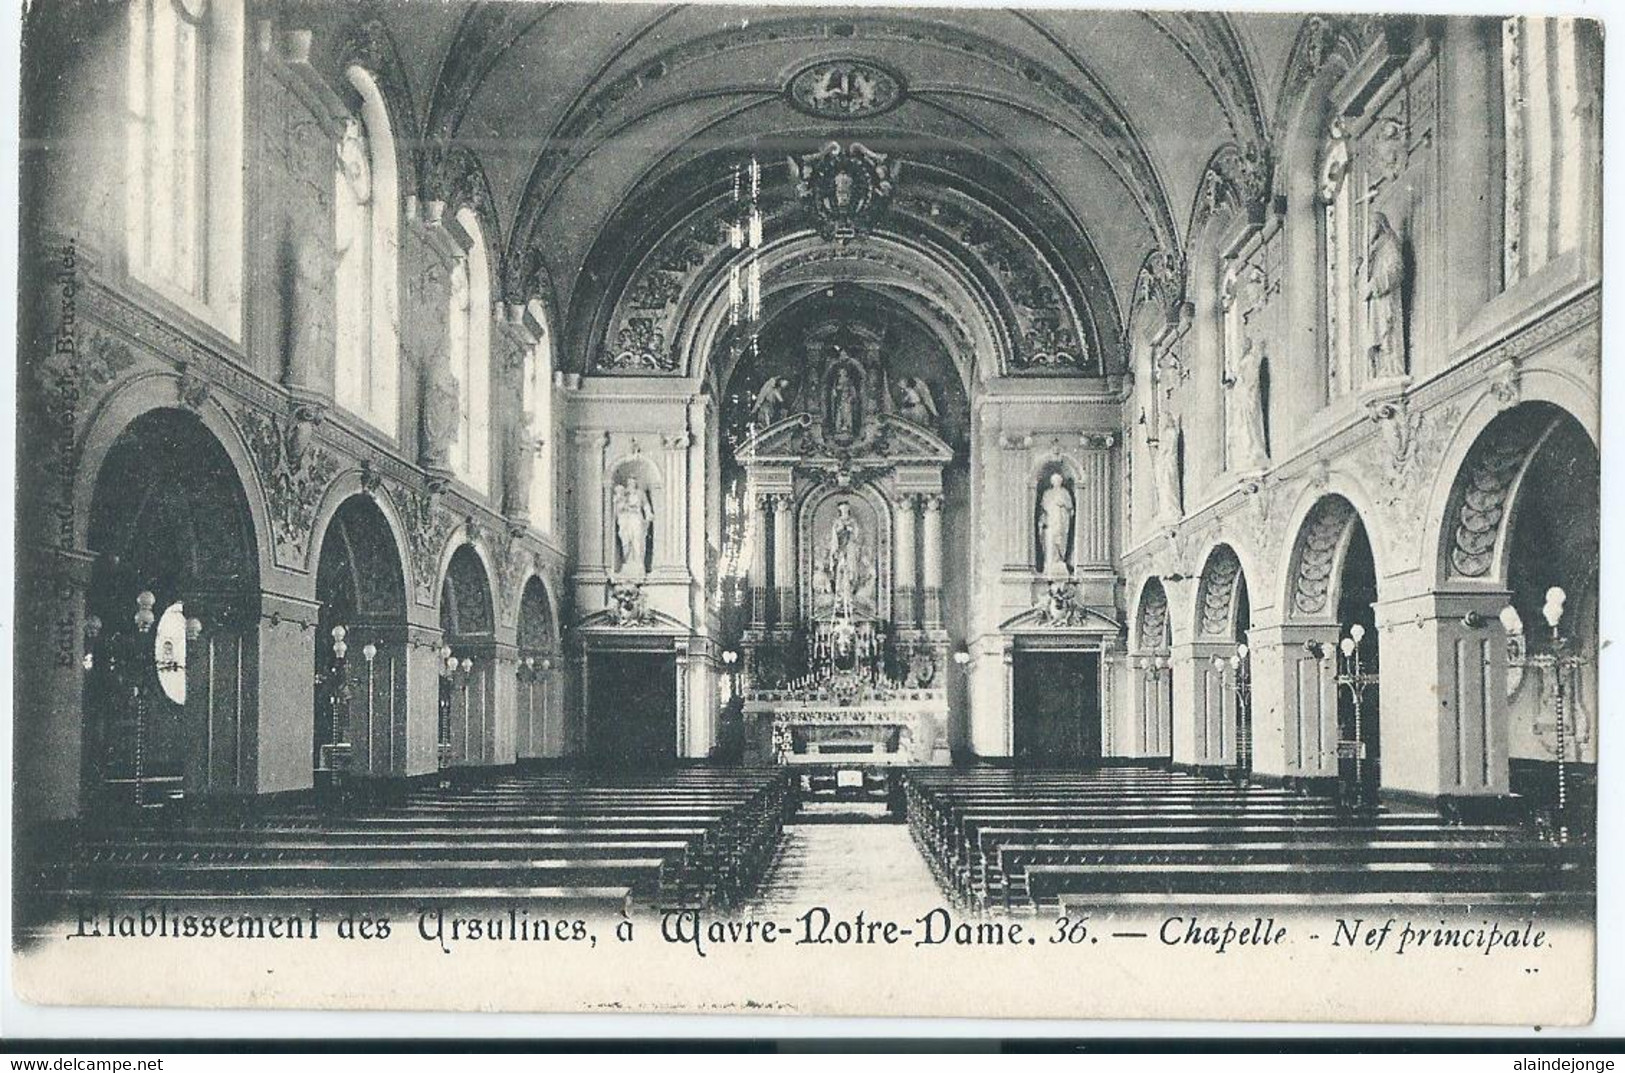 Wavre-Notre-Dame - Onze-Lieve-Vrouw-Waver - Institut Des Ursulines - Nef Principale - 1906 - Sint-Katelijne-Waver